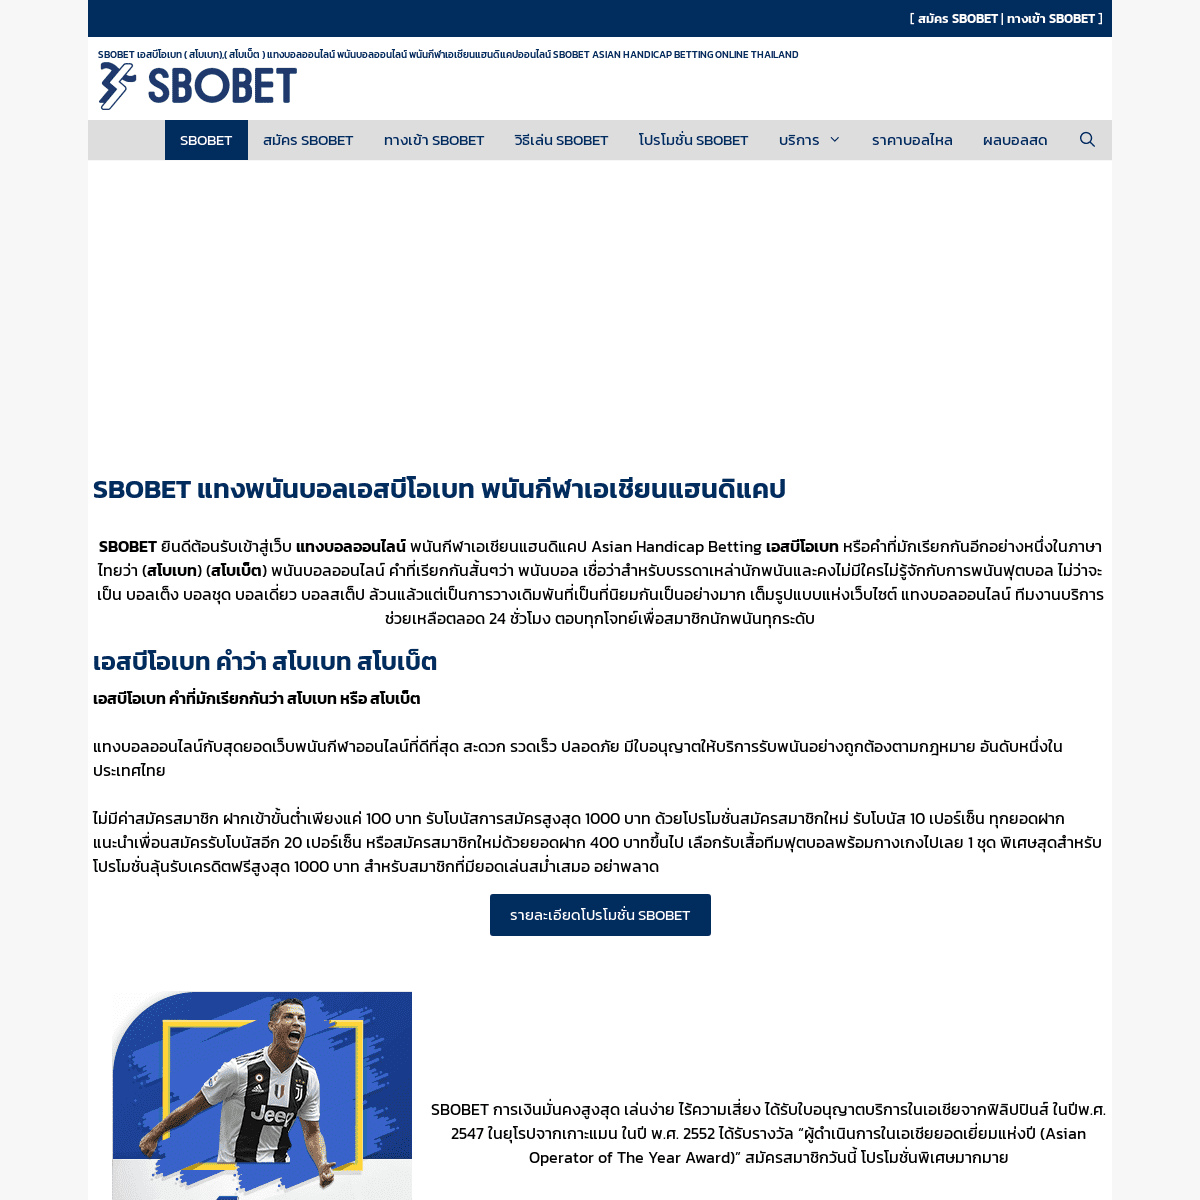 A complete backup of https://sbobet-official.com